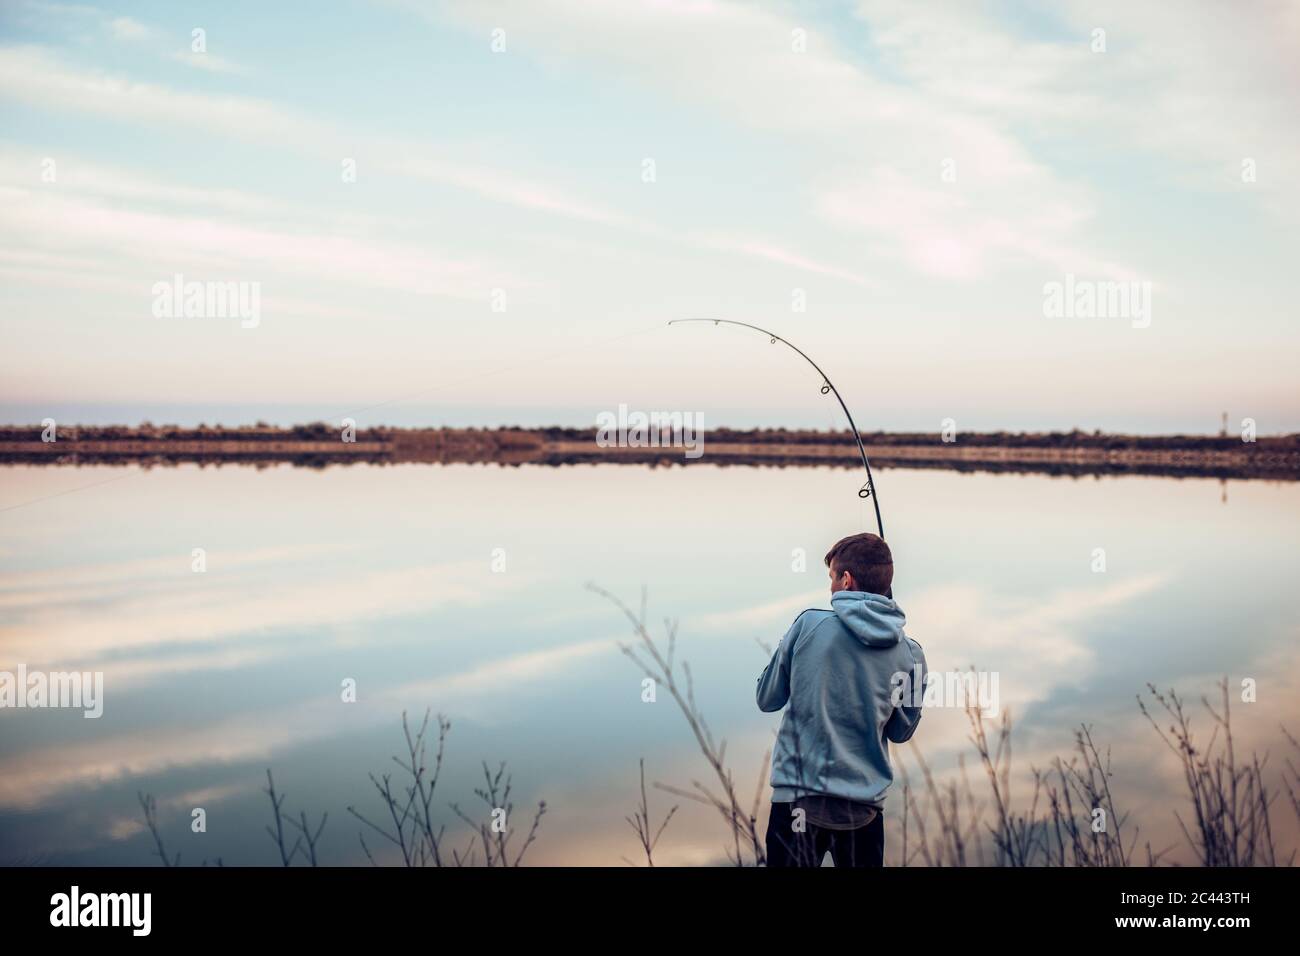 Vue arrière d'un adolescent portant une chemise à capuche, pêche avec la canne dans le lac contre le ciel nuageux Banque D'Images